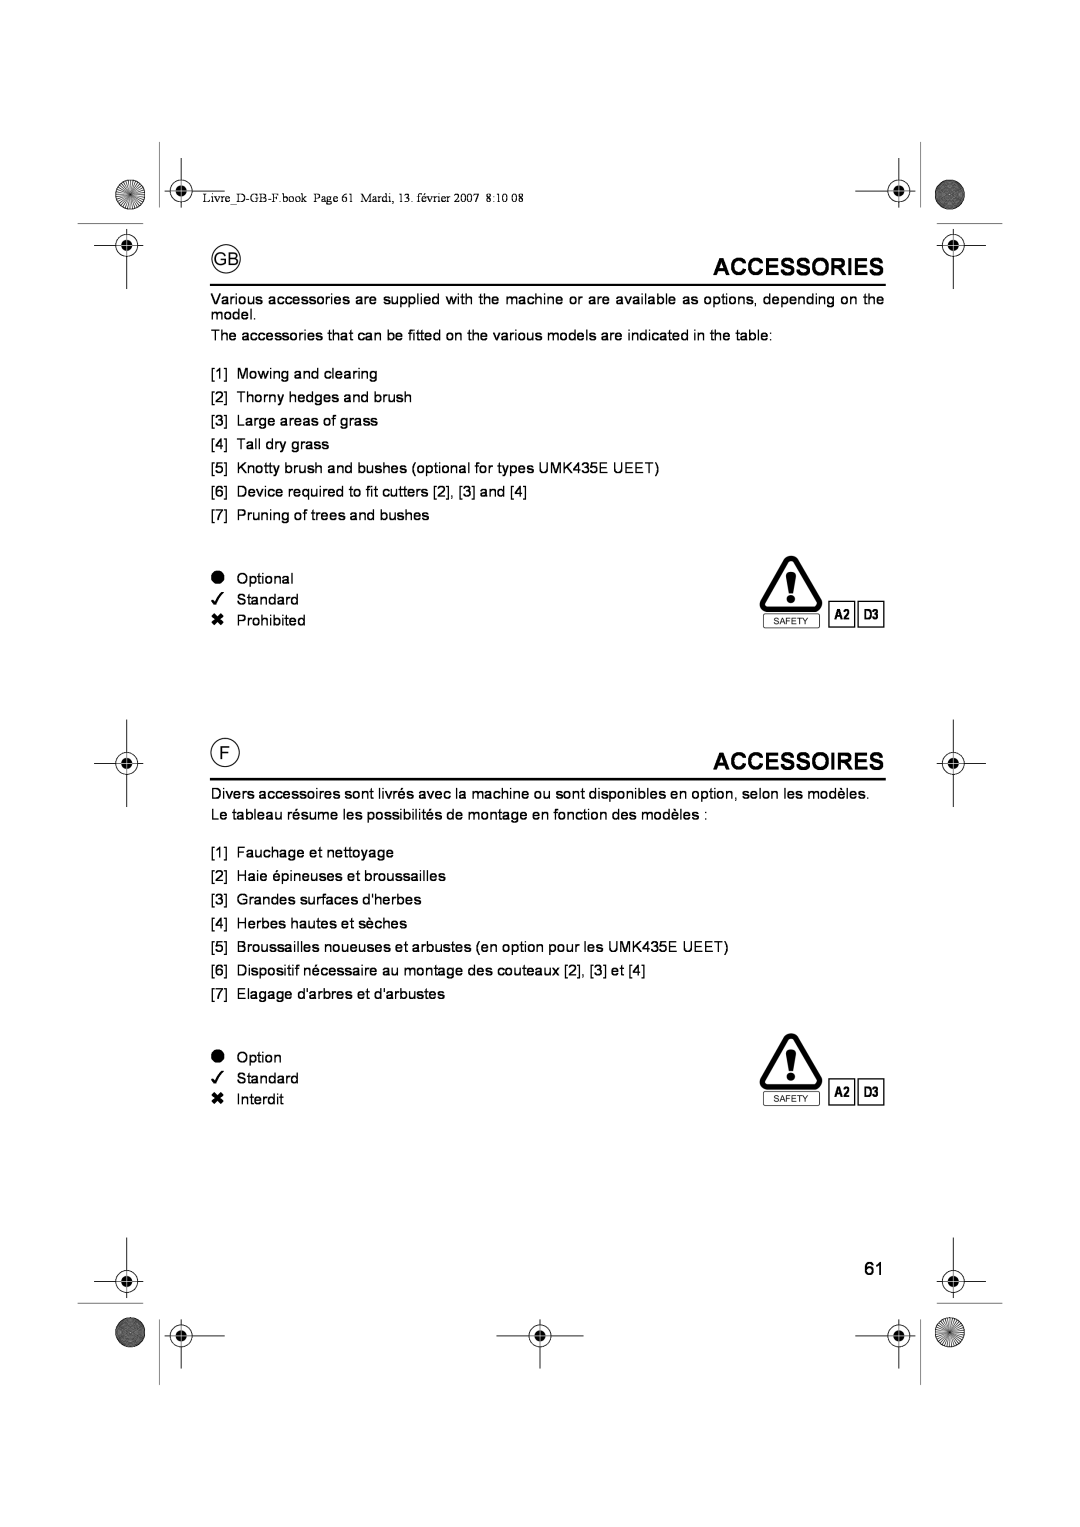 Honda Power Equipment UMK435E owner manual Accessories, Accessoires, A2 D3 